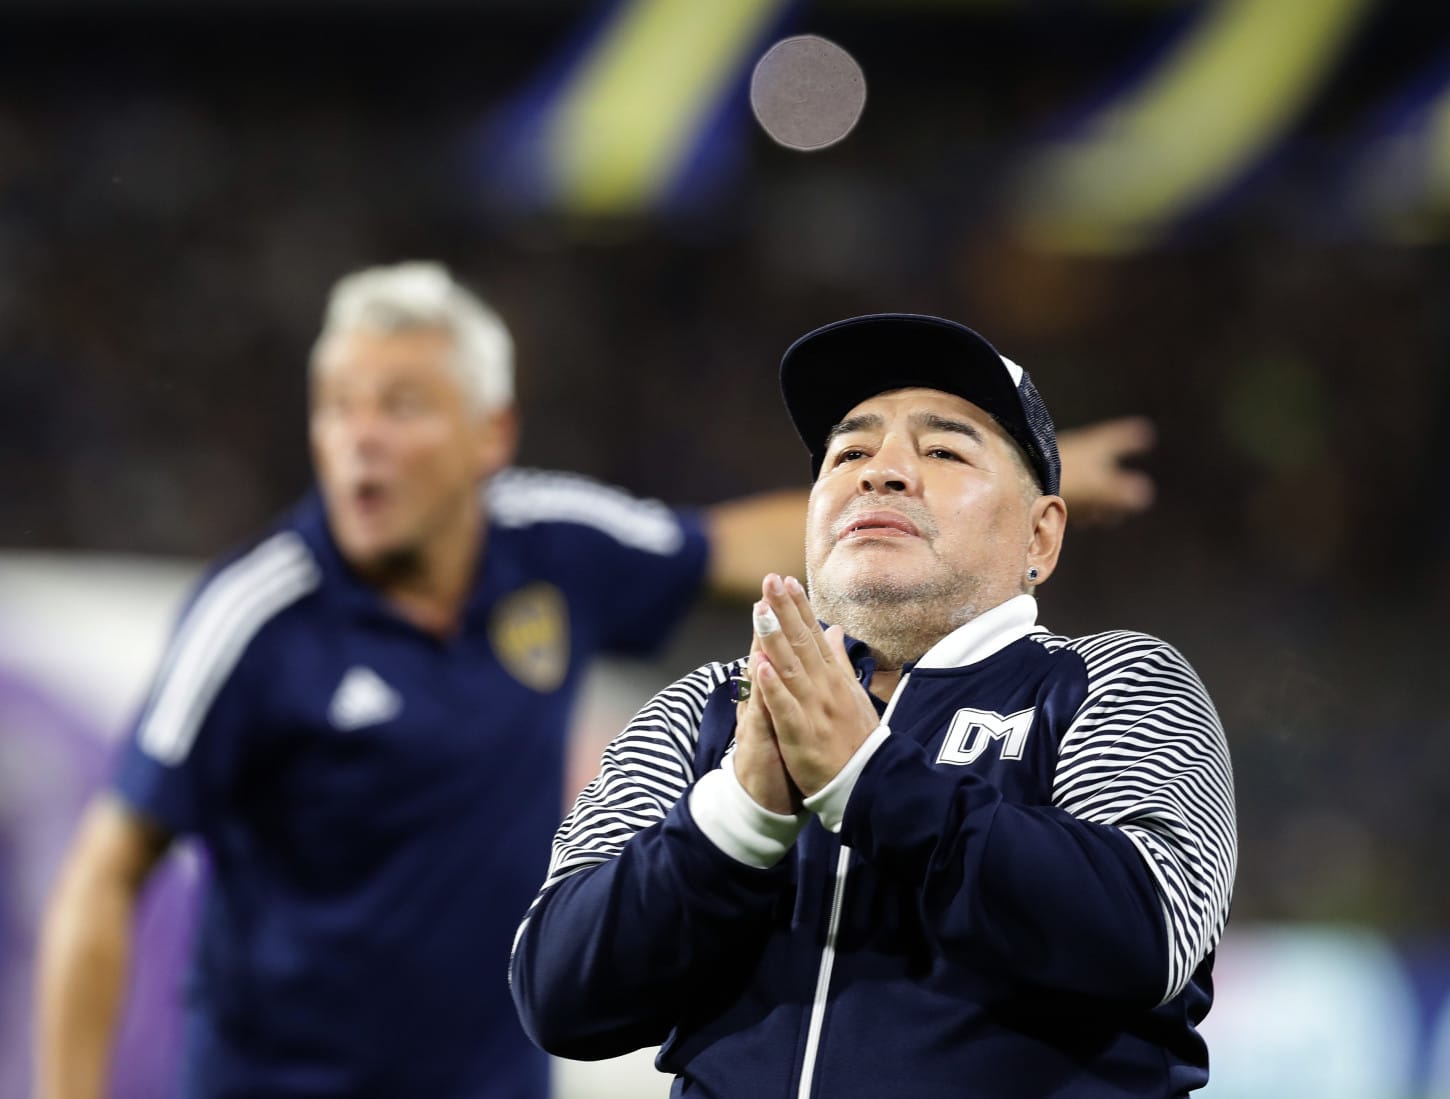 Fiscales rechazan pedidos de detención en causa por la muerte de Maradona